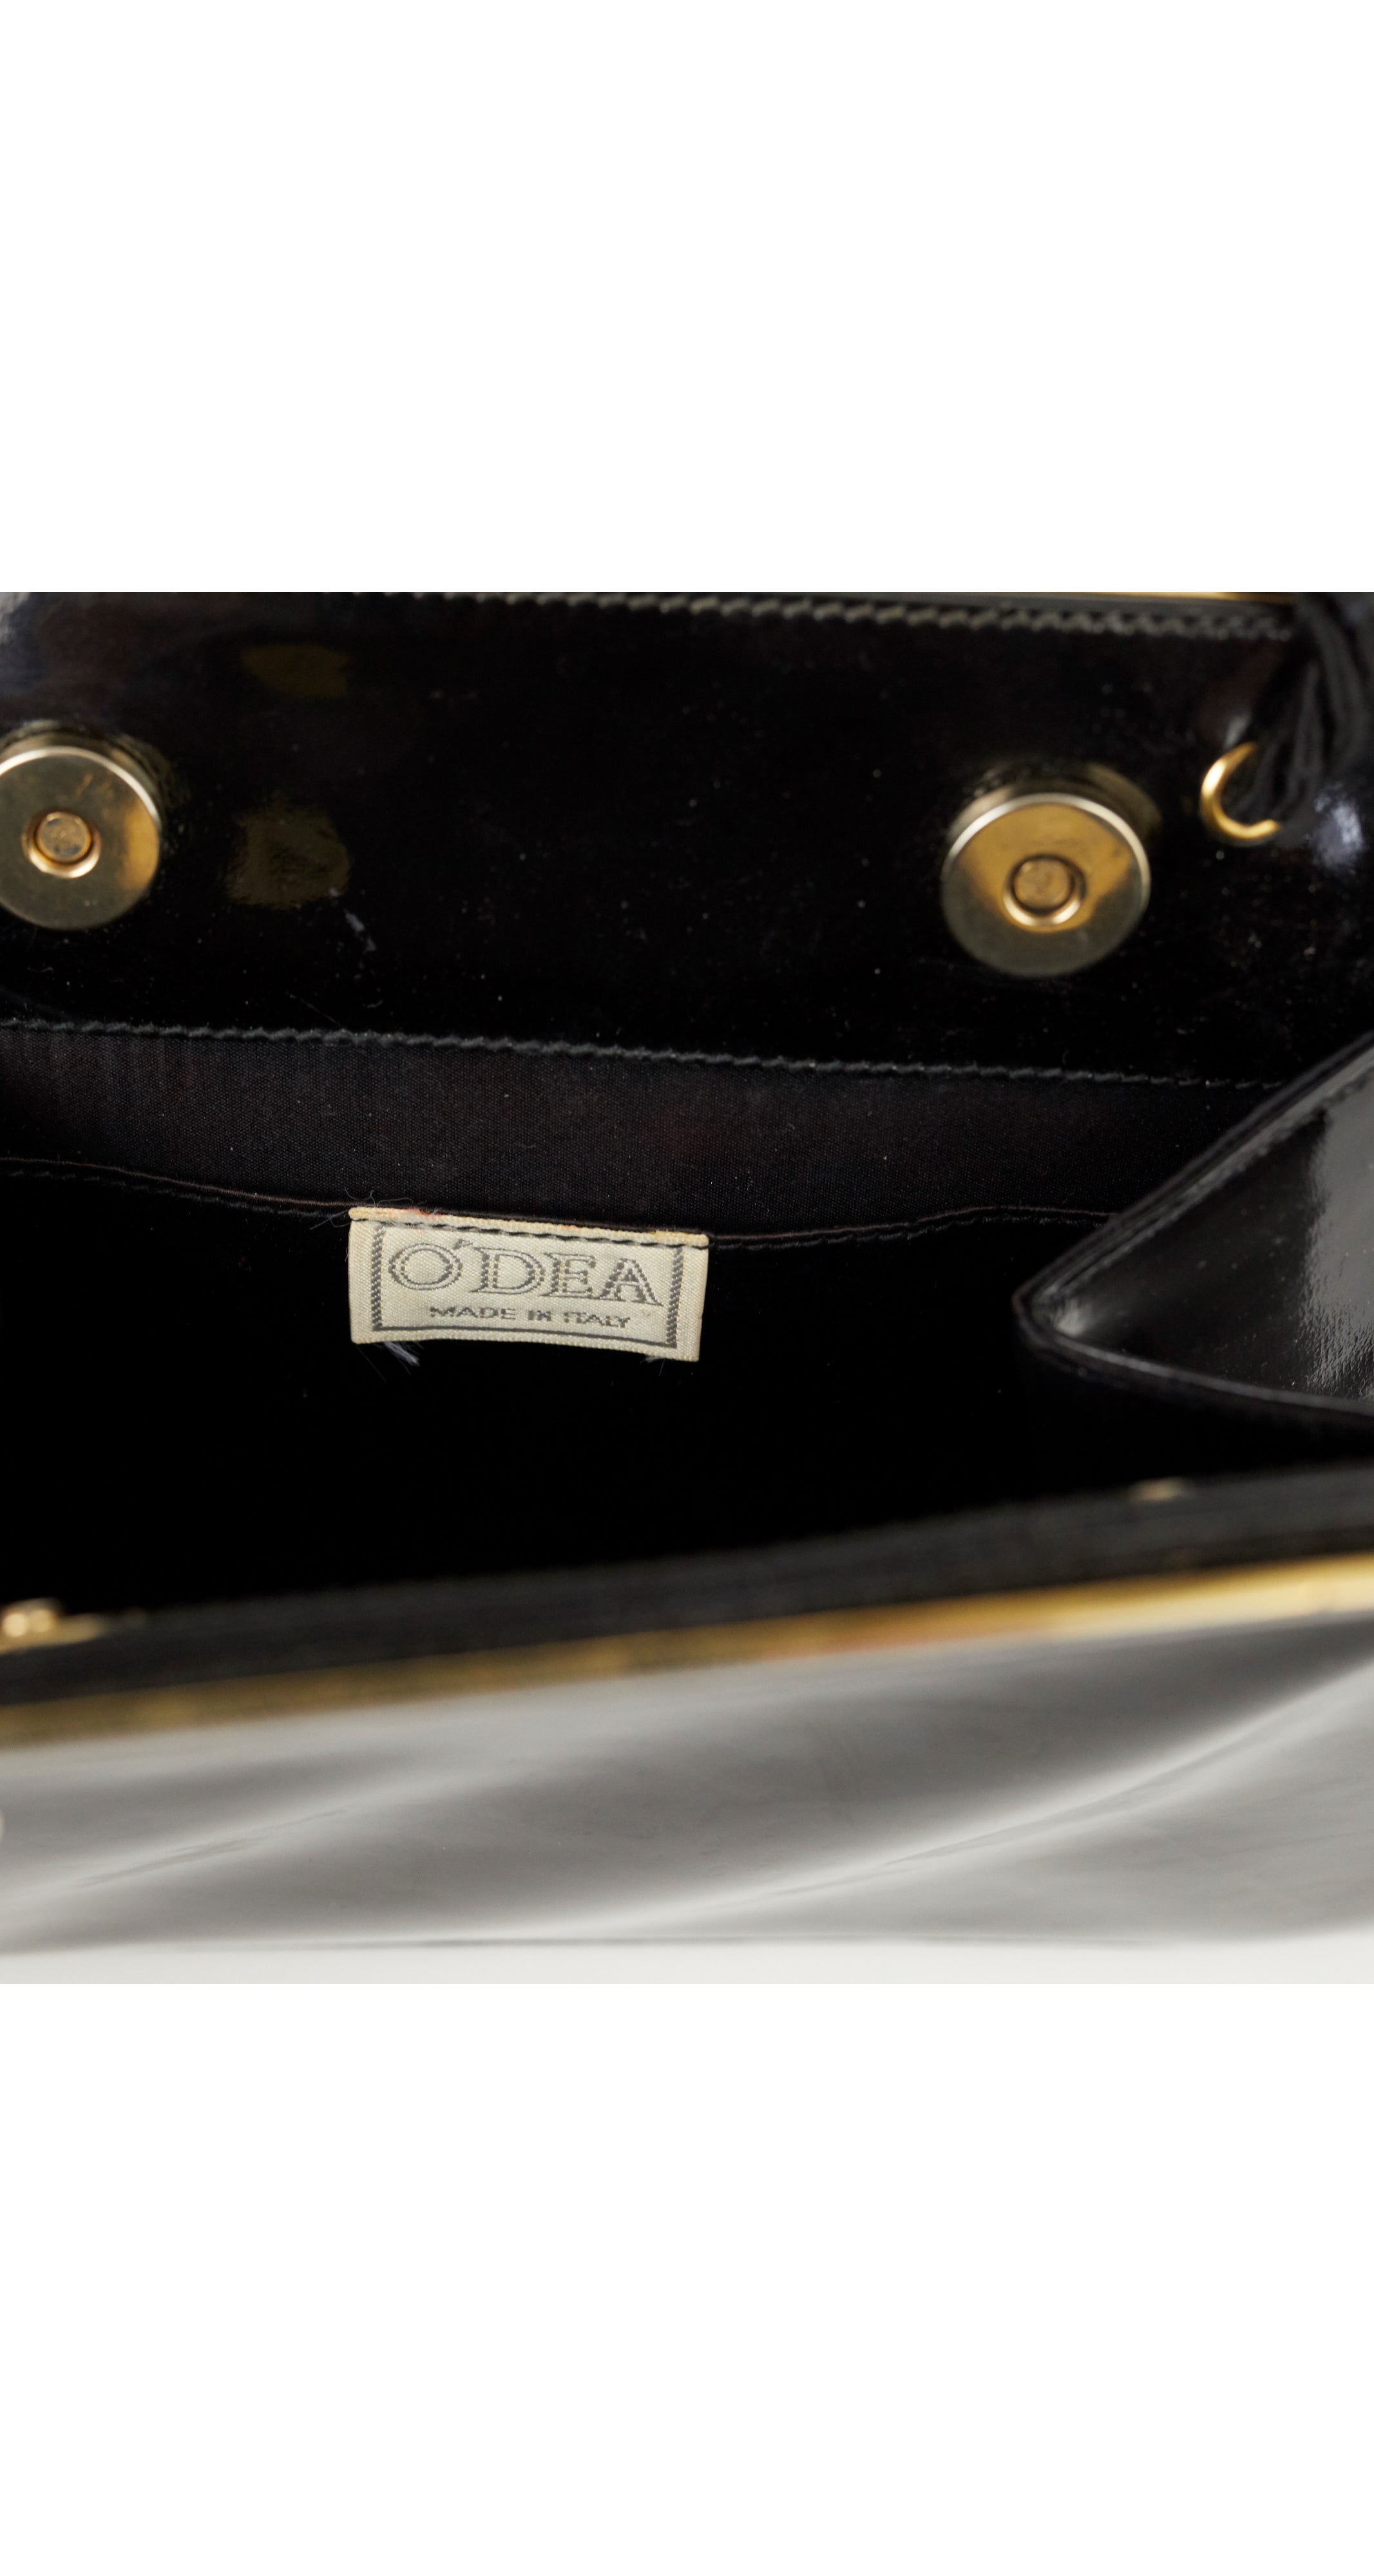 Patrick O'Dea 1980s Italian Black & Gold Enamel Patent Leather Bag ...